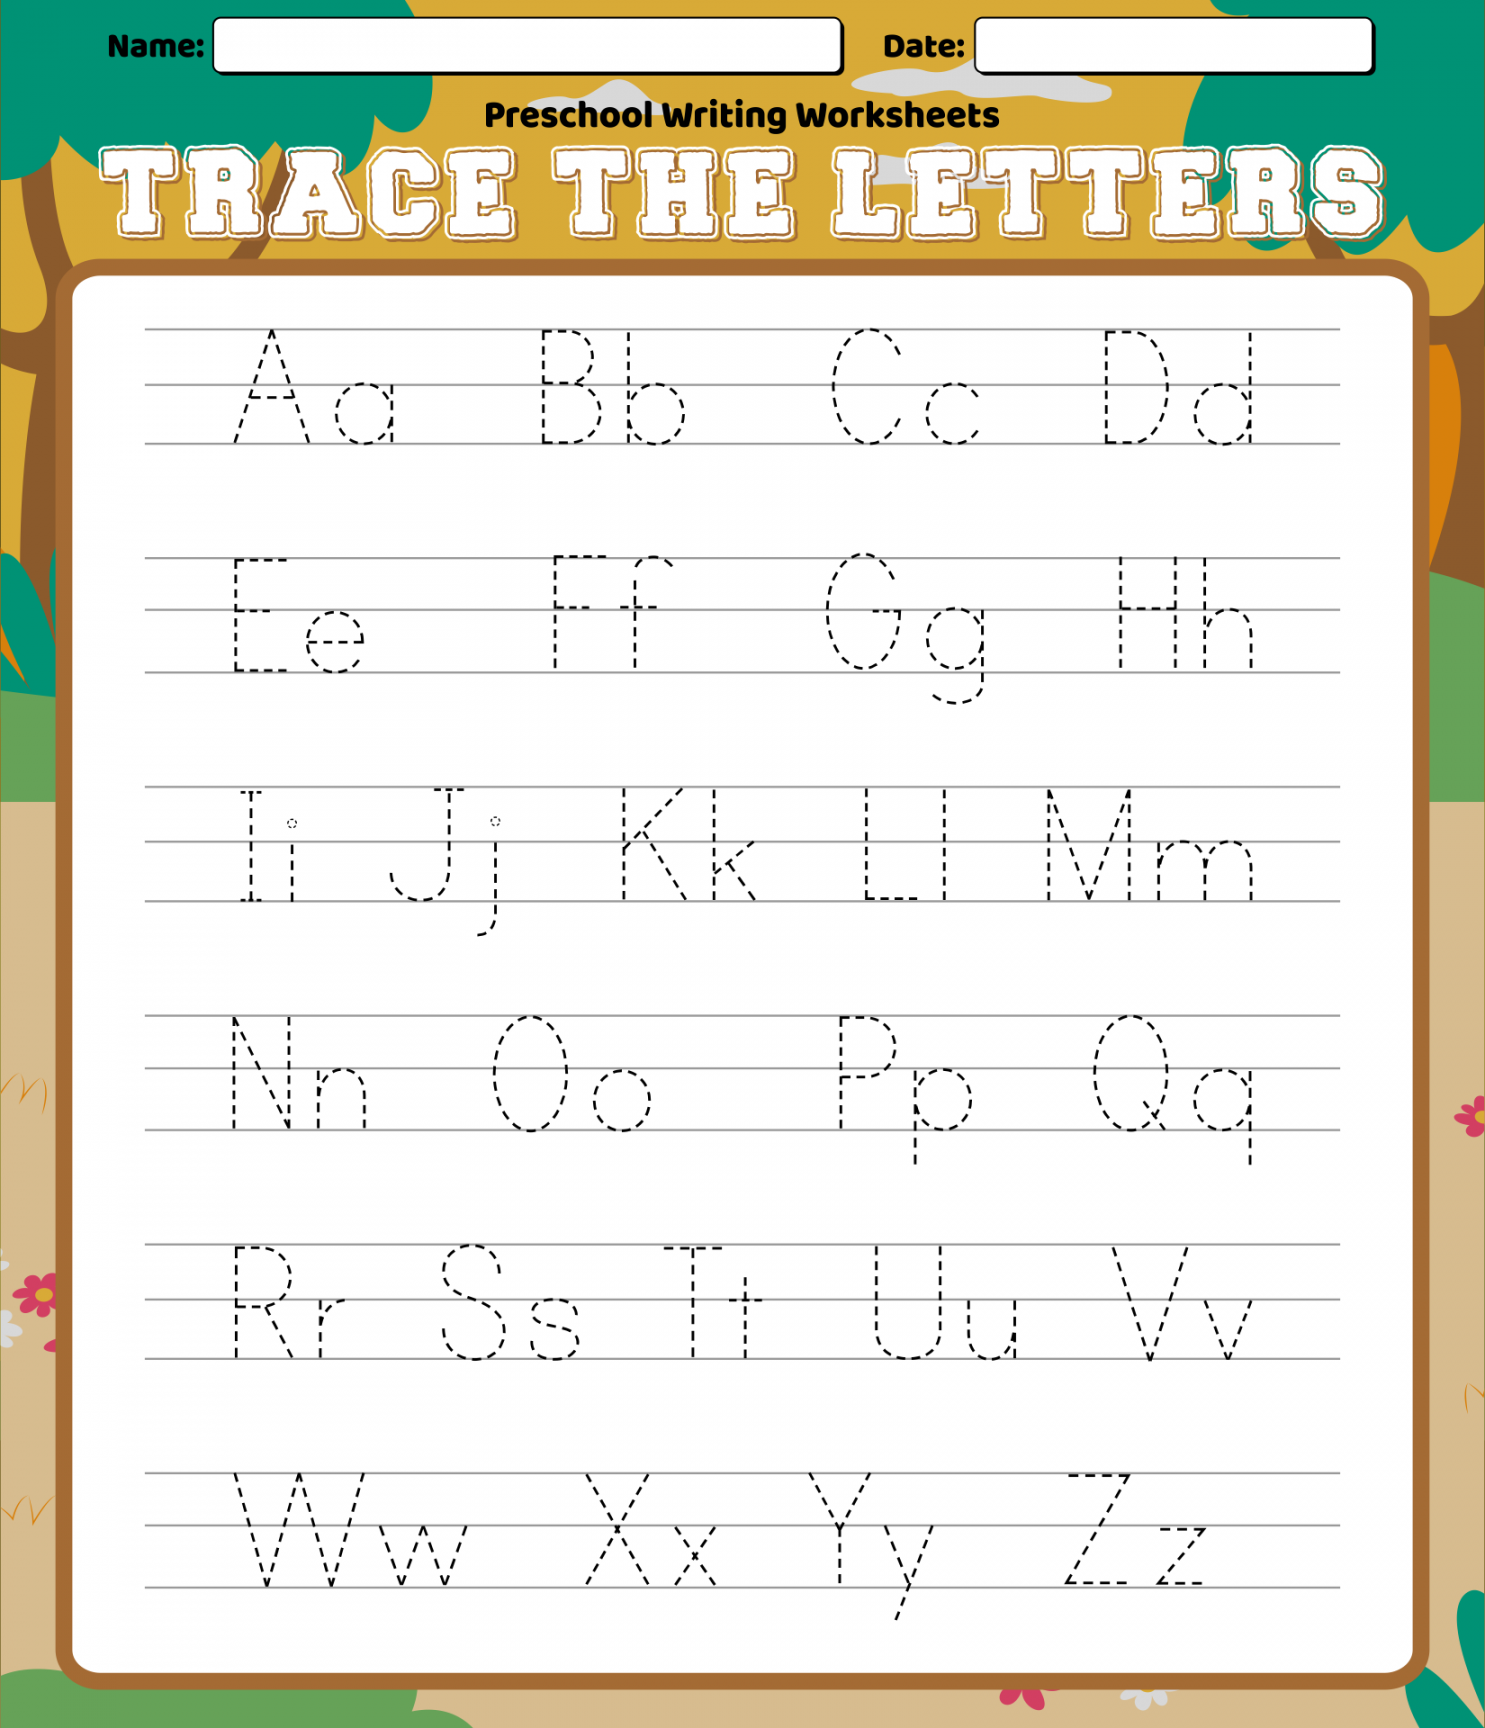 Best Preschool Writing Worksheets Free Printable Letters  - FREE Printables - Handwriting Free Printable Preschool Worksheets Tracing Letters